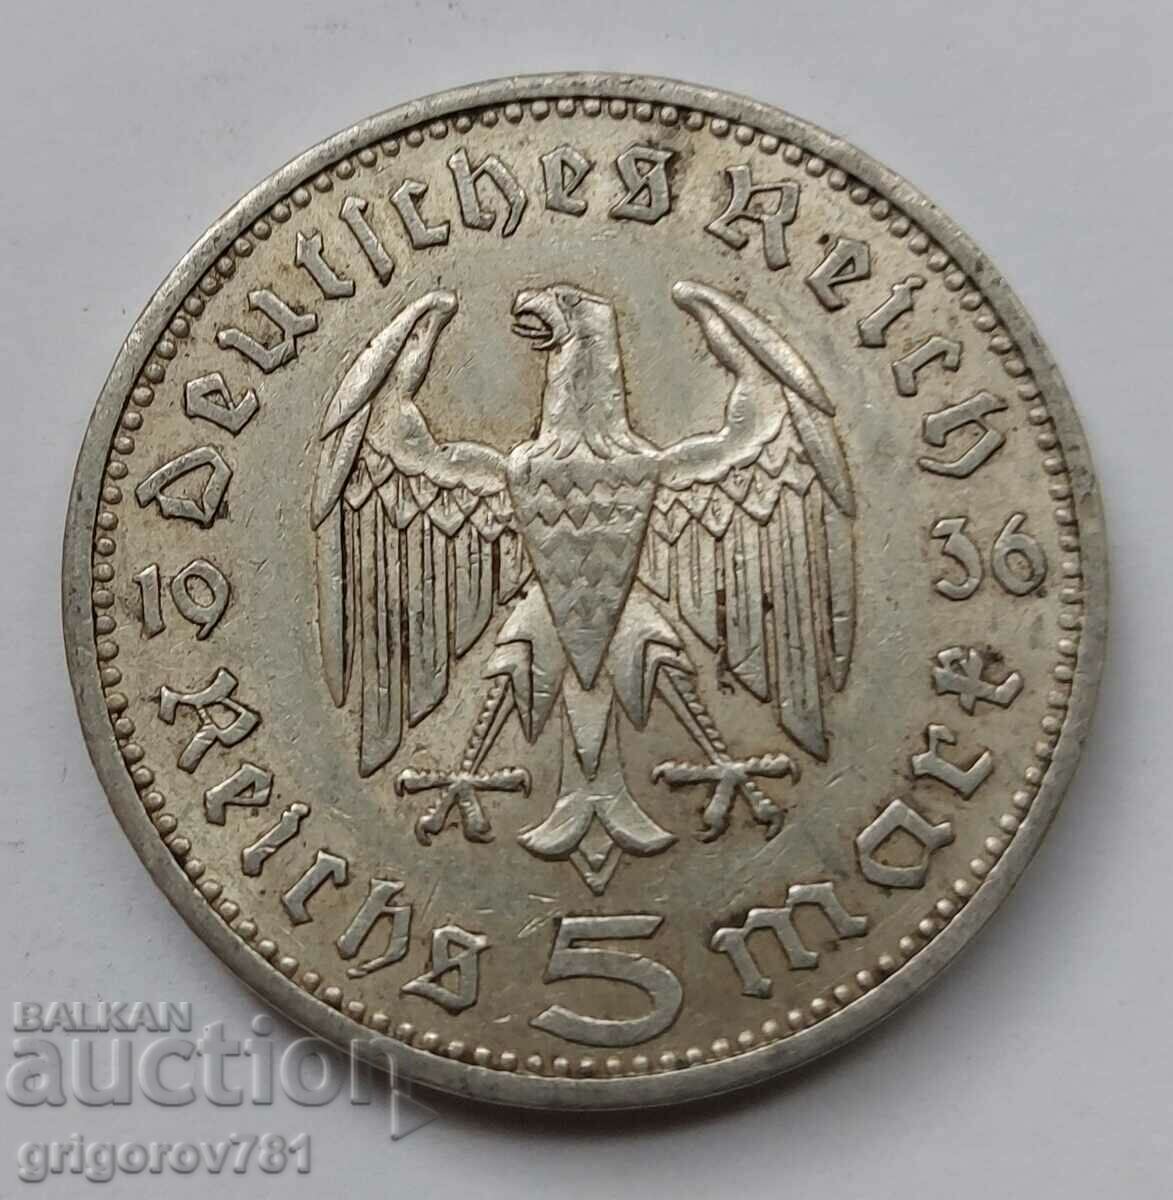 5 марки сребро Германия 1936 A III Райх  сребърна монета №48